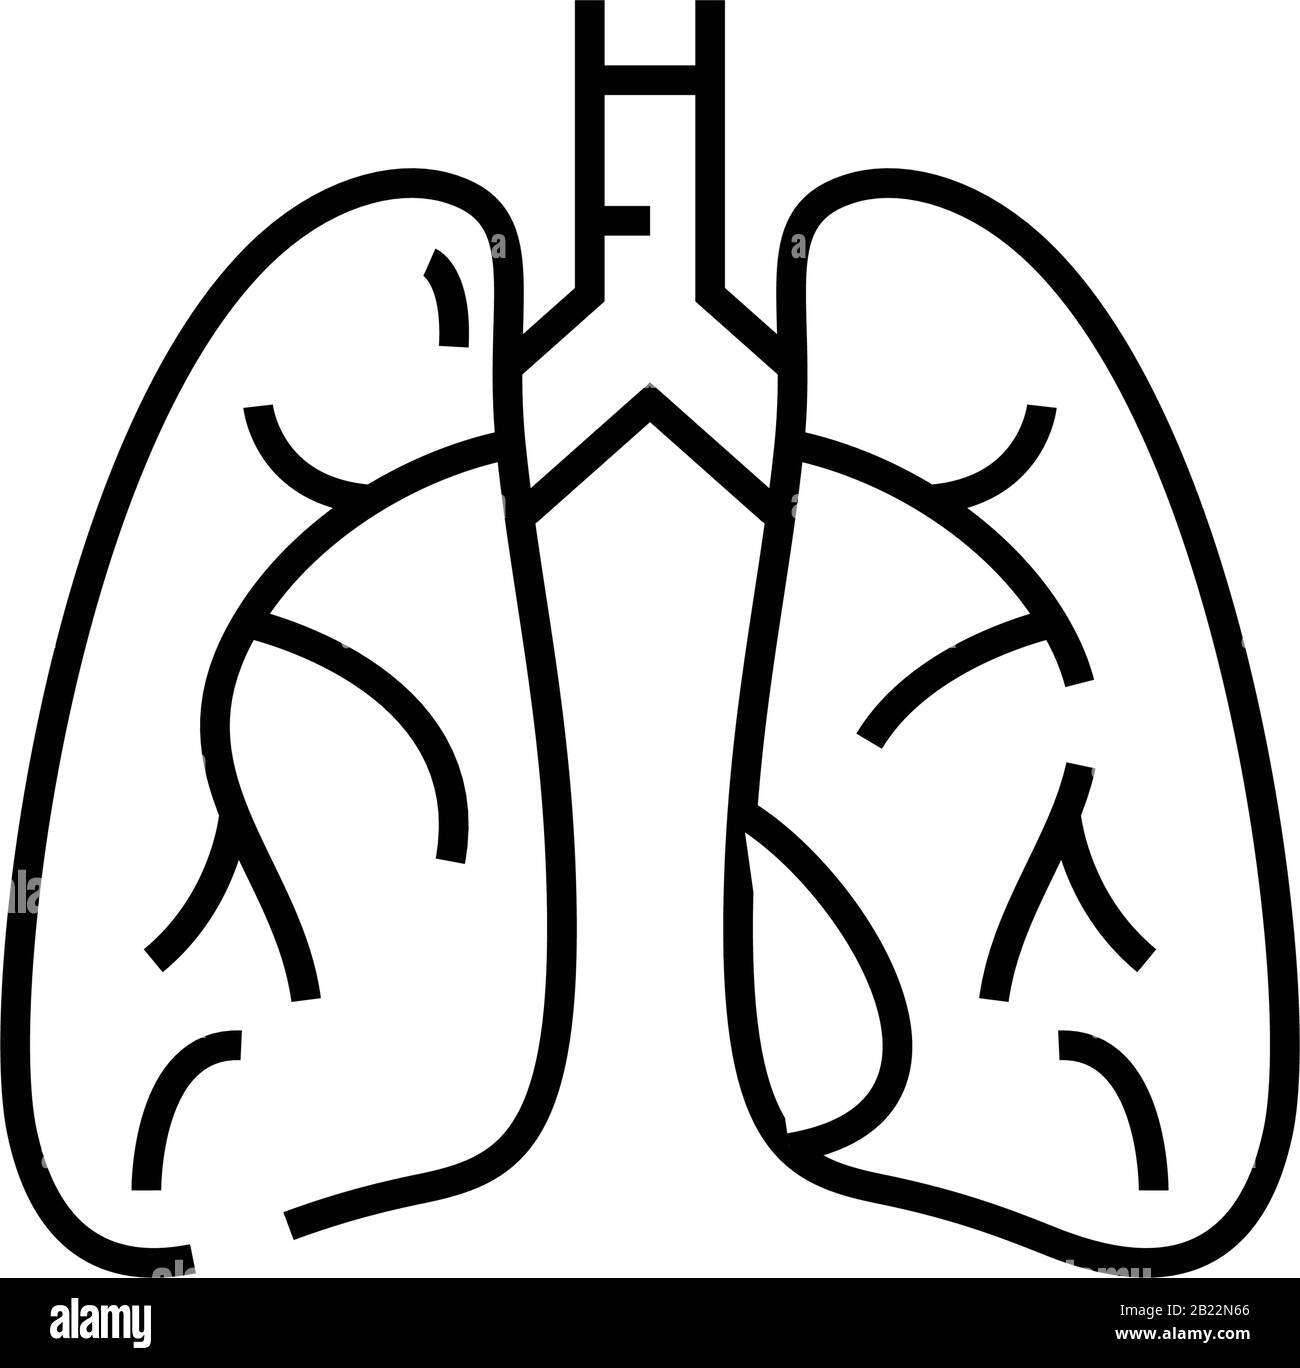 Internes Organ das Symbol für die Lungenlinie, das Konzeptzeichen, die Konturvektorabbildung, das lineare Symbol. Stock Vektor